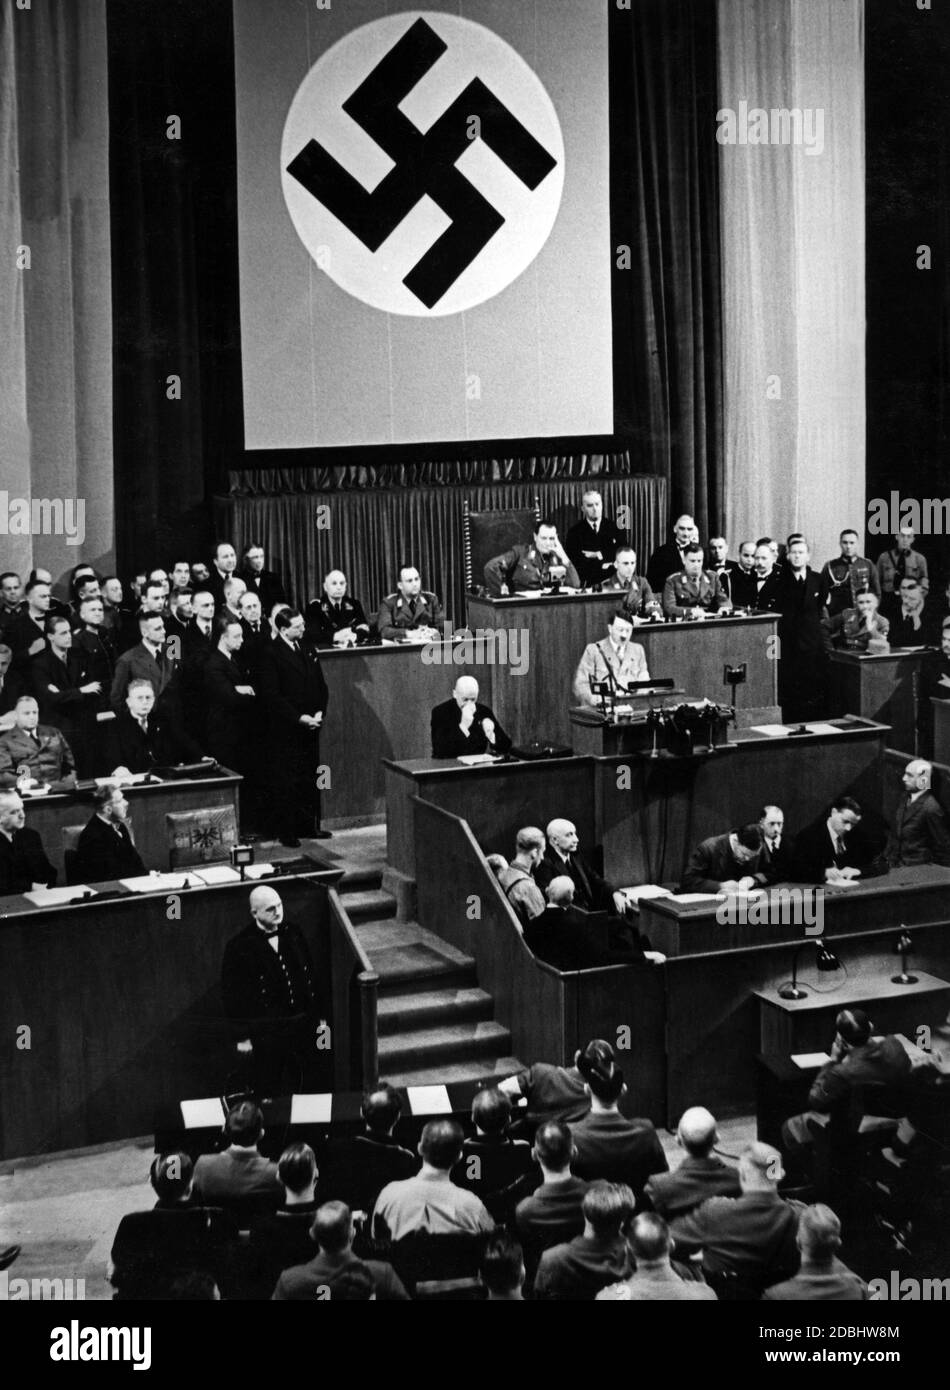 Adolf Hitler lors d'un discours au cours de la campagne pour les élections du Reichstag de 11.12.1933 et le référendum sur le retrait de la Société des Nations, dans le bâtiment du Parlement à Berlin. Banque D'Images